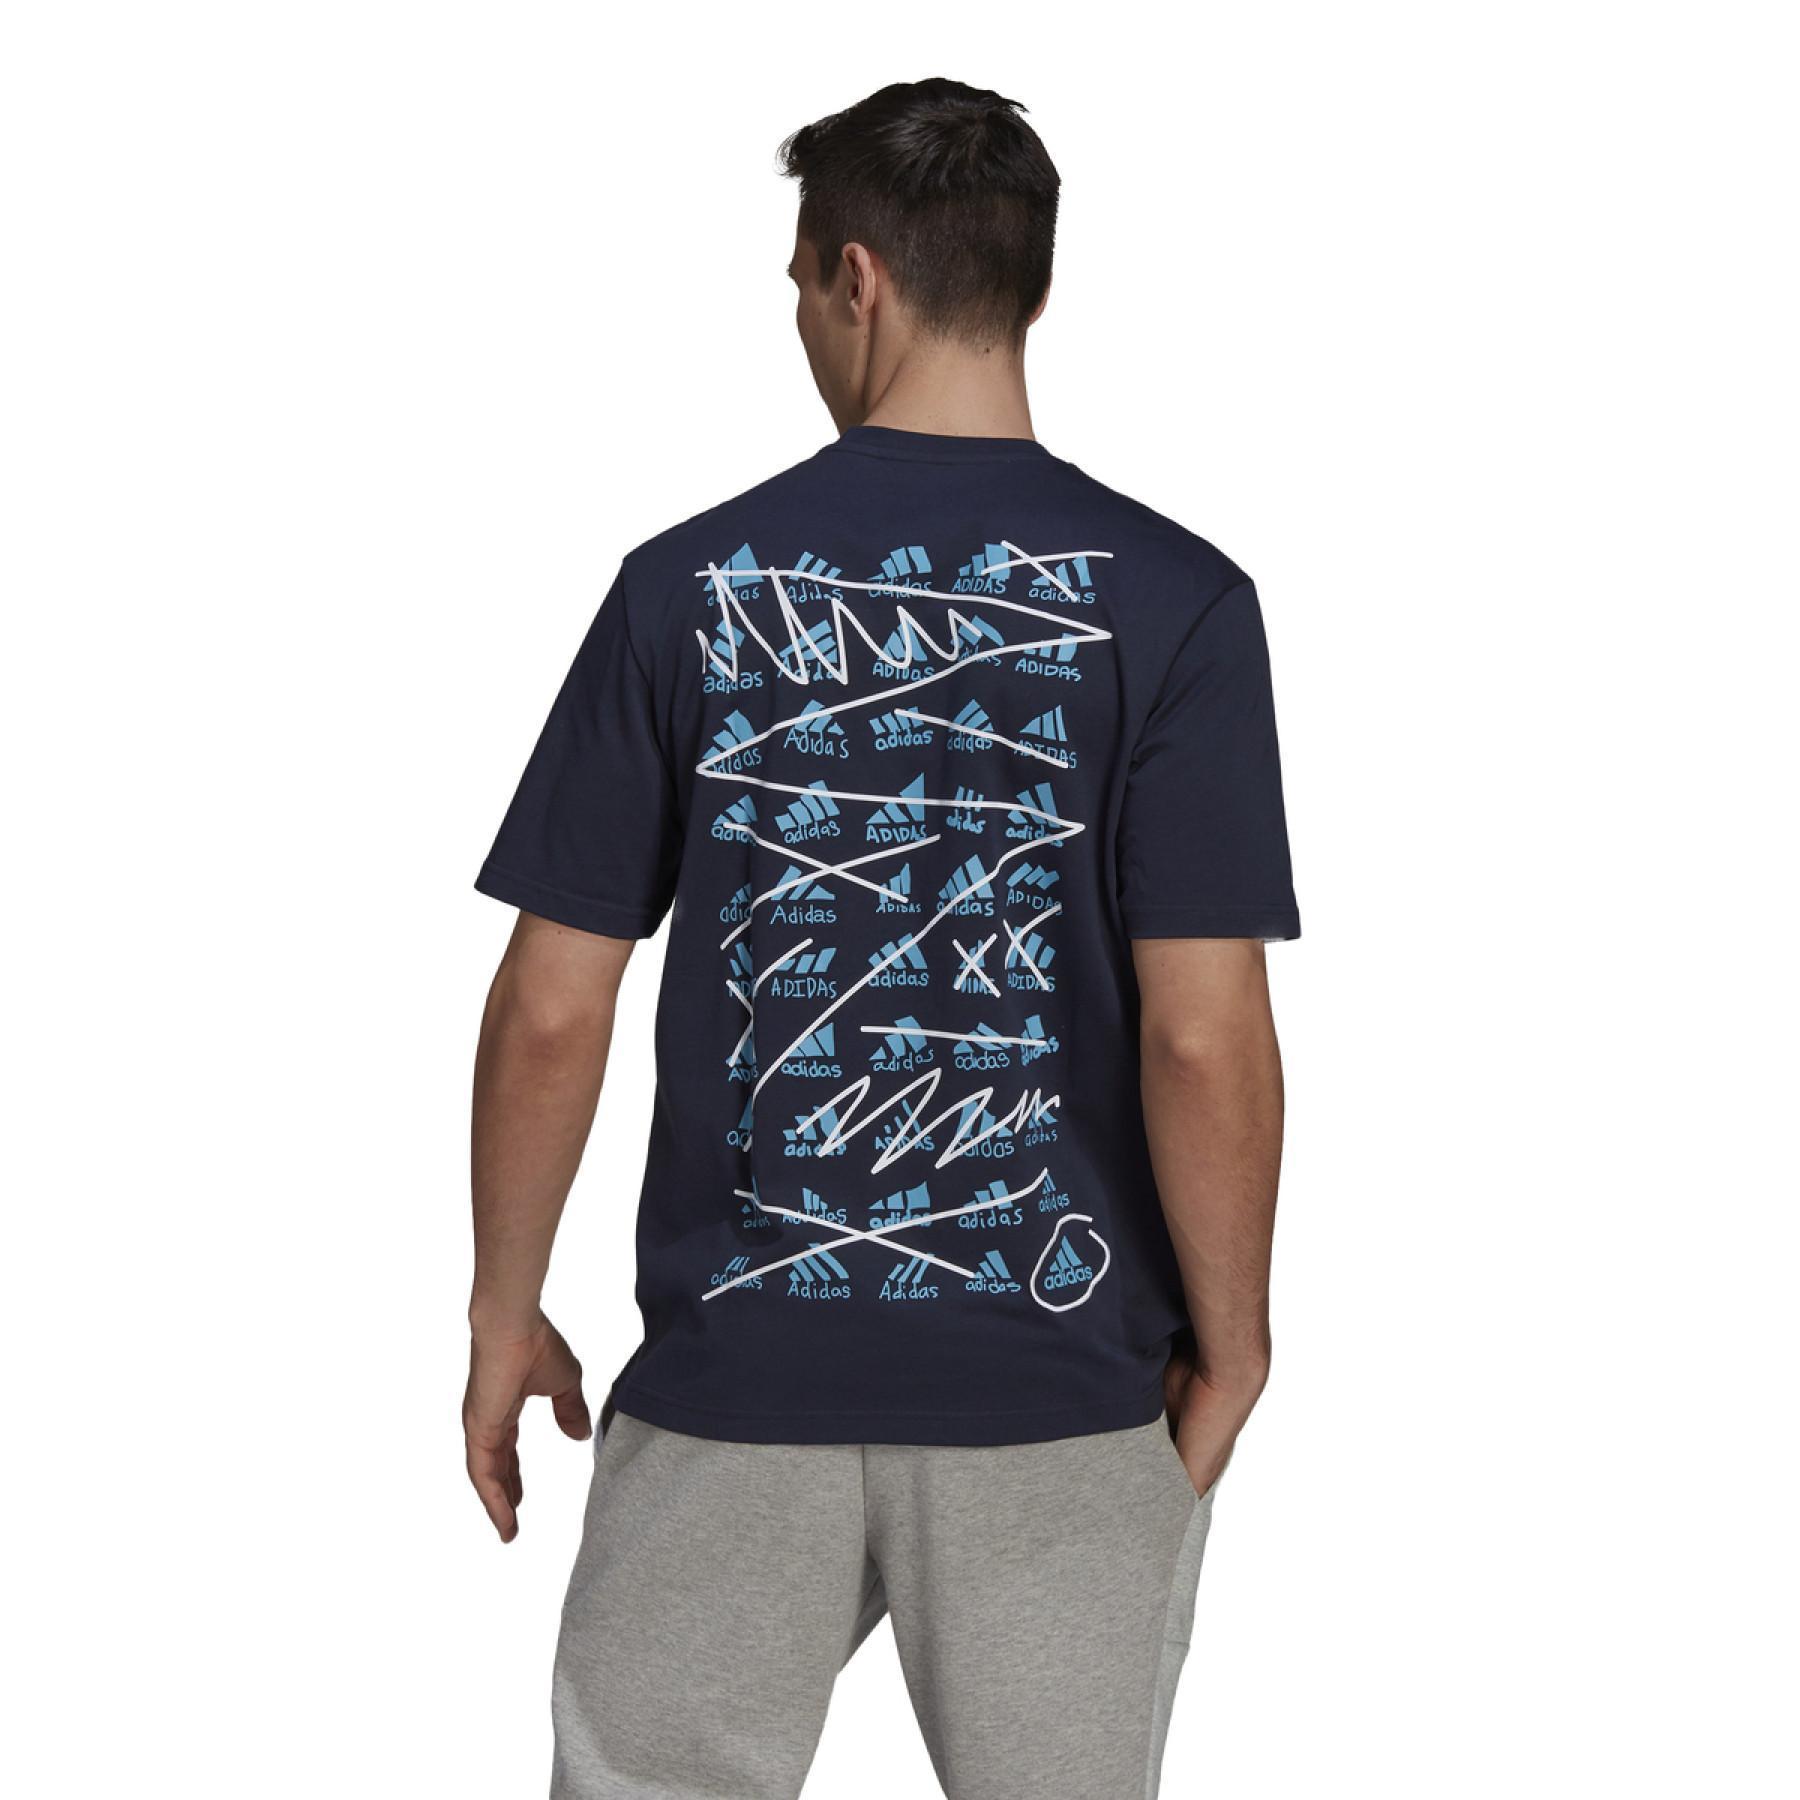 Sleeveless T-shirt adidas BOS Scribble